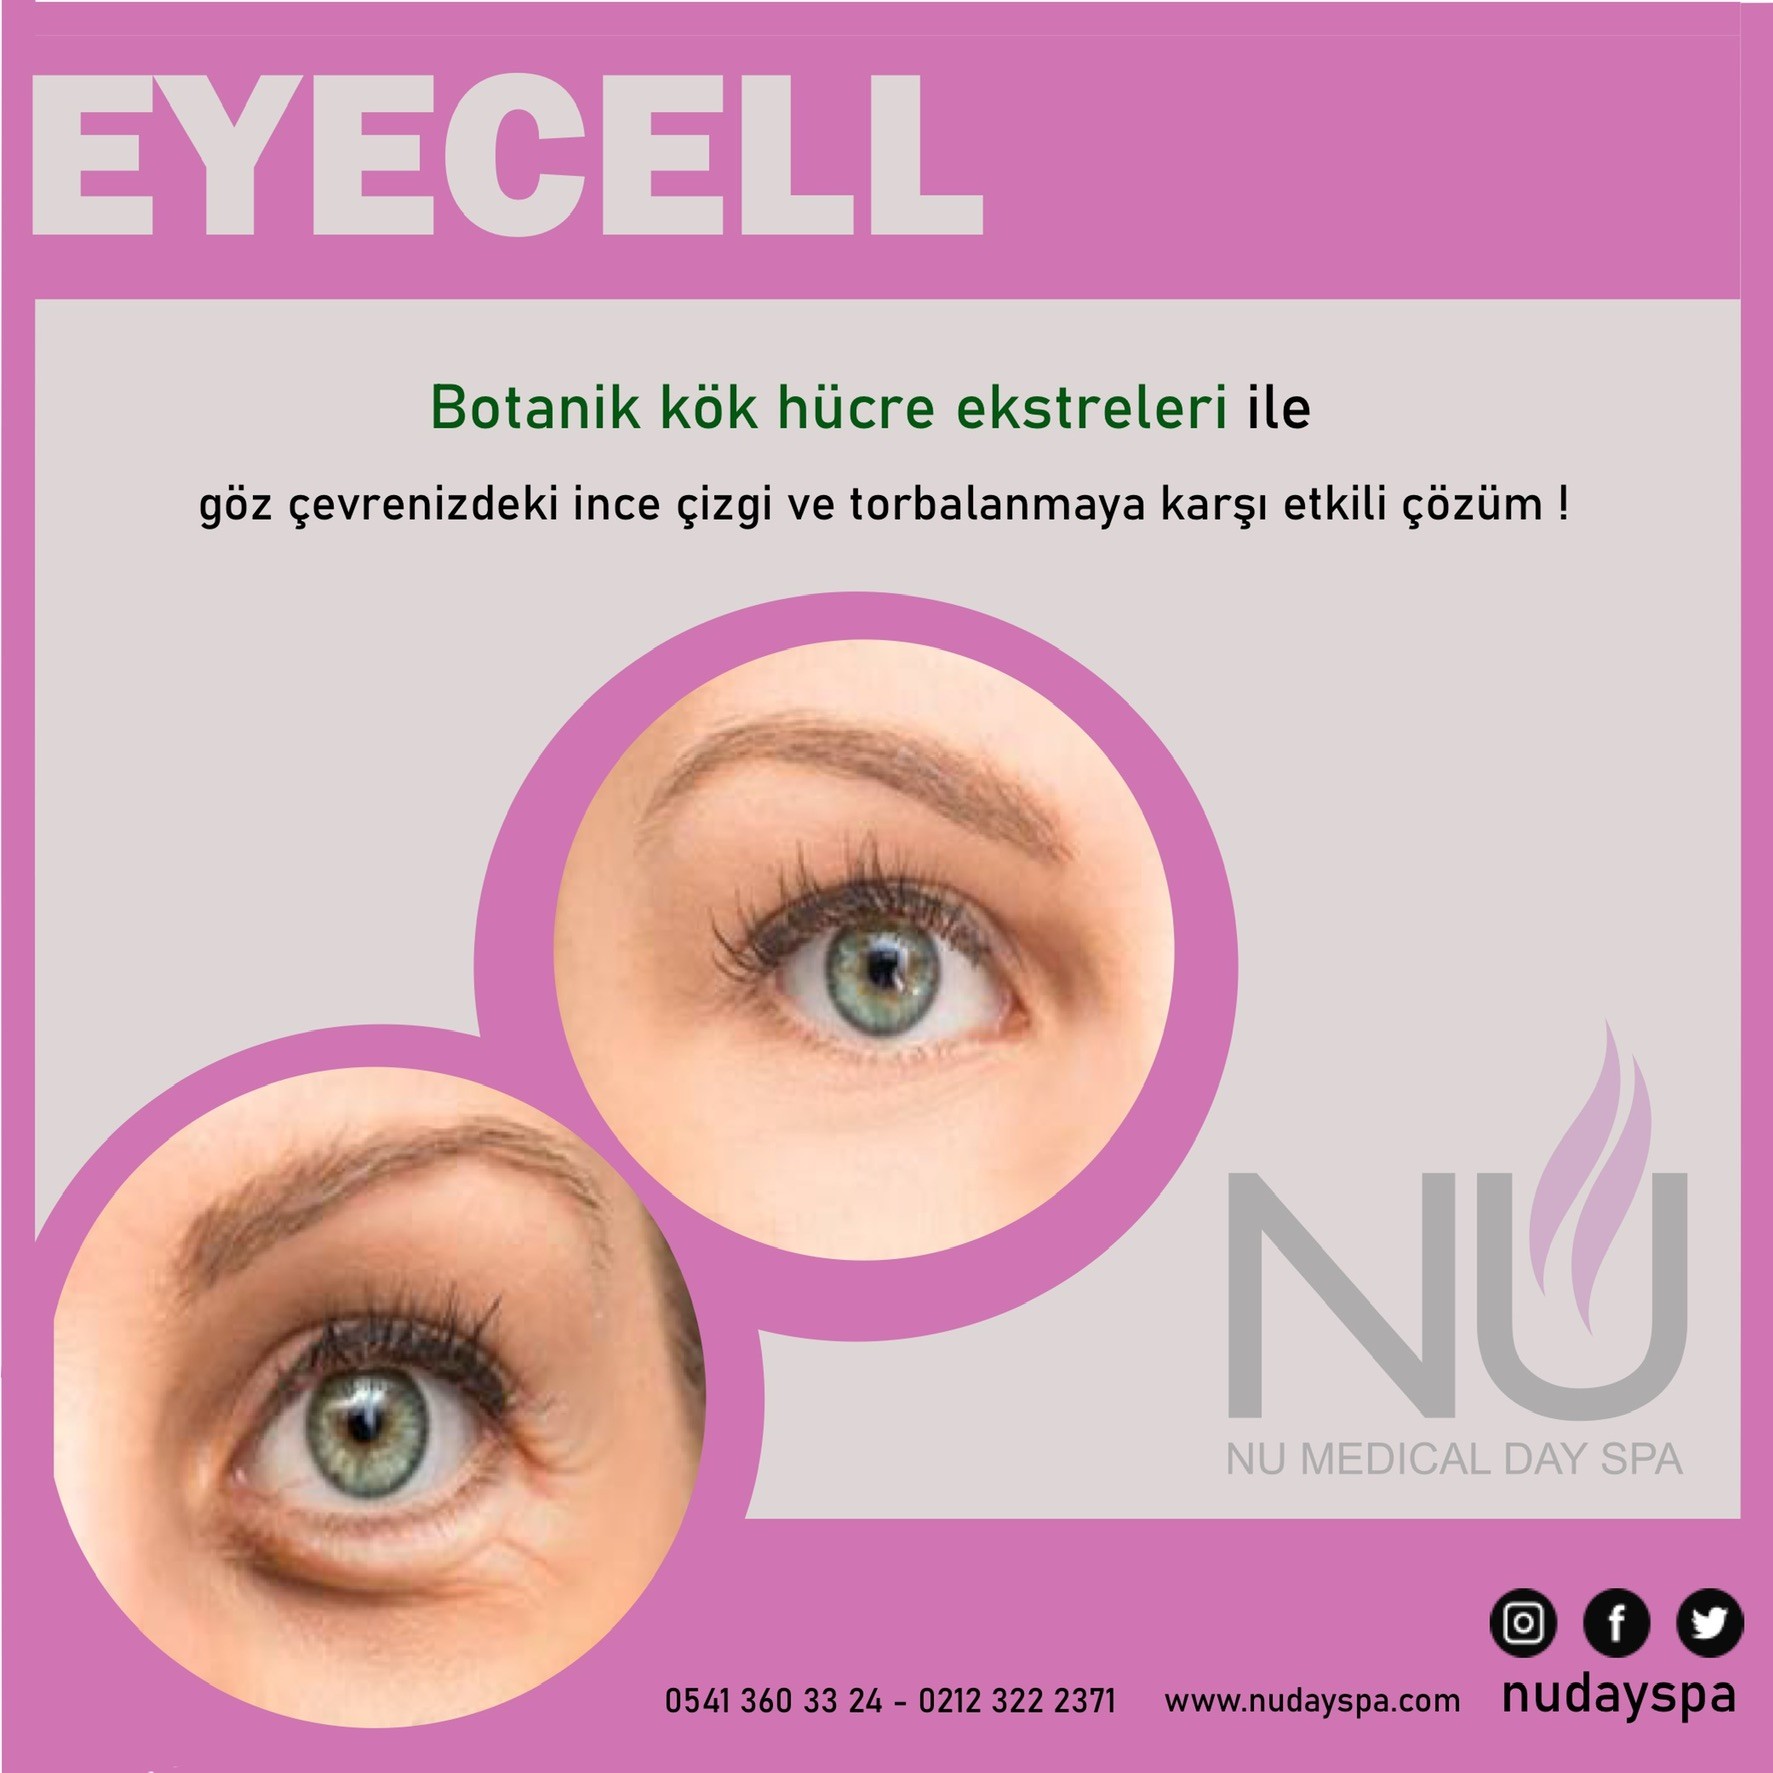 eyecell göz çevresi bakımı